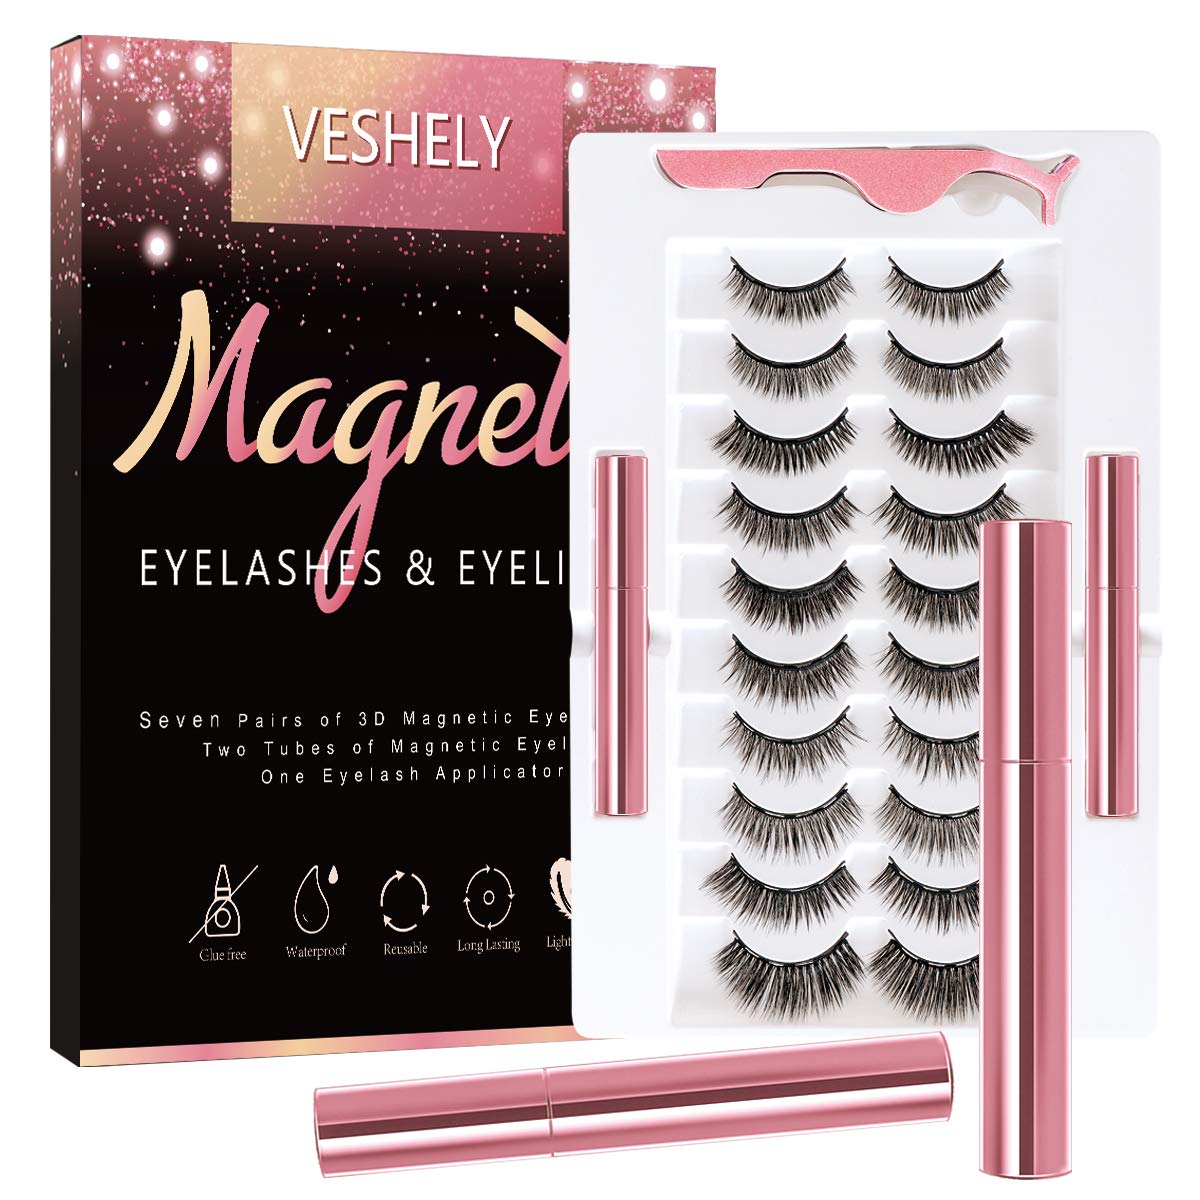 EYEKESHE Magnetic Eyelashes with Eyeliner Kit, 3D Natural Magnetic Eyelashes Set with Applicator and 2 Waterproof Magnetic Eyeliner (10 Pairs)